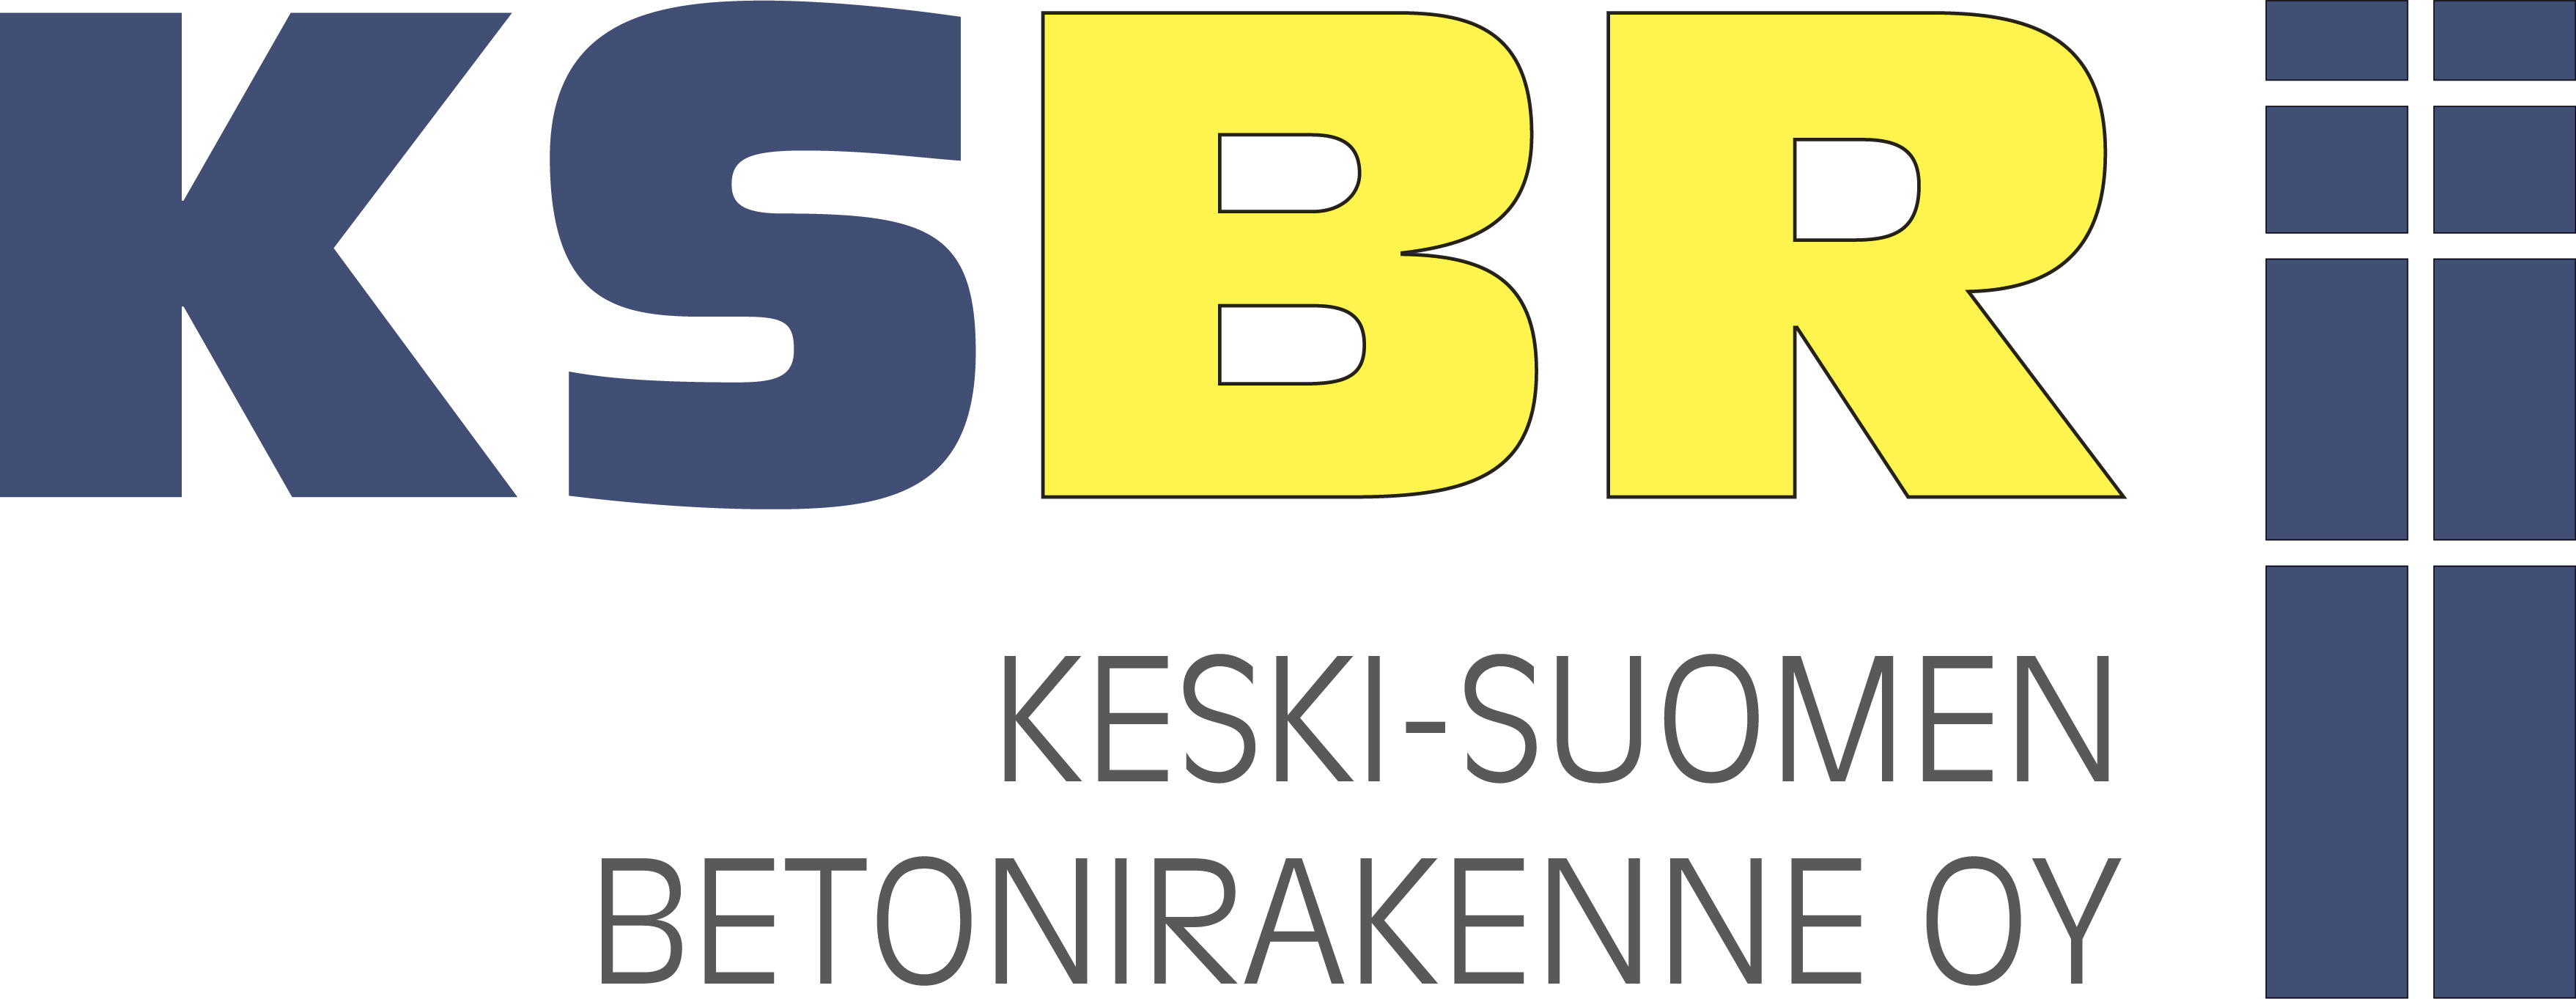  | Keski-Suomen Betonirakenne Oy